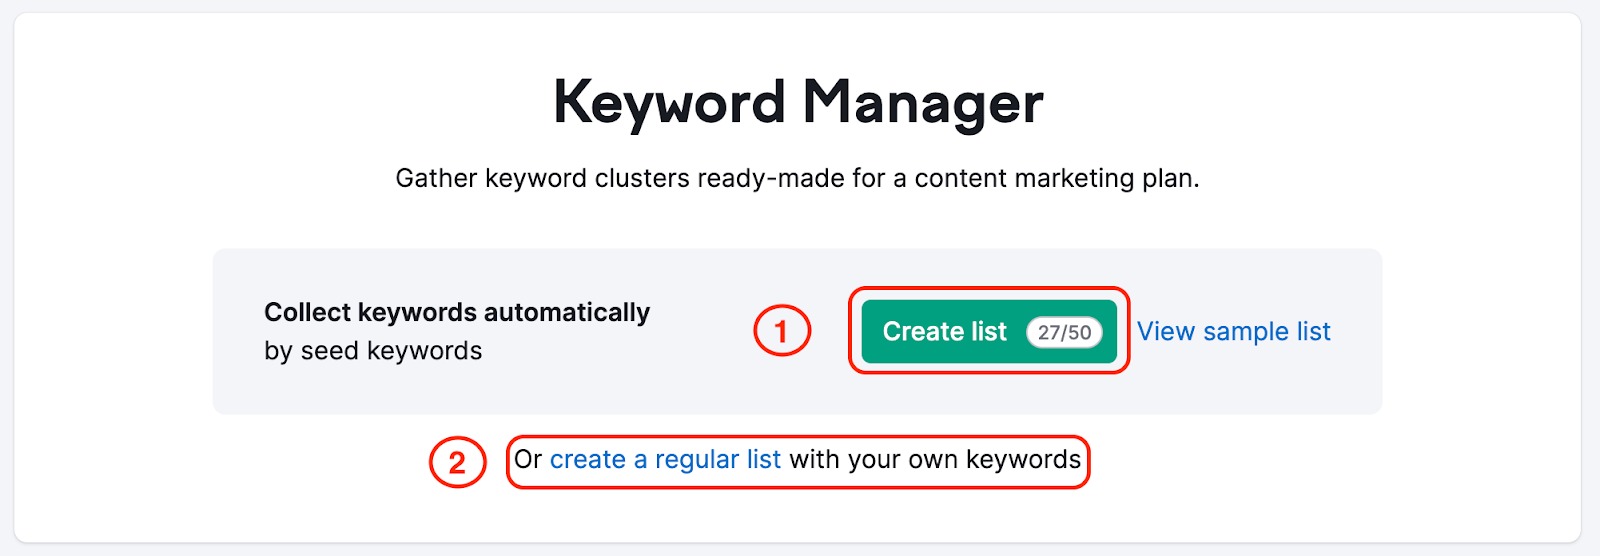 Página inicial do Keyword Manager com retângulos vermelhos destacando o botão "Criar lista", que gera uma lista agrupada, e abaixo o botão "Criar lista comum". 